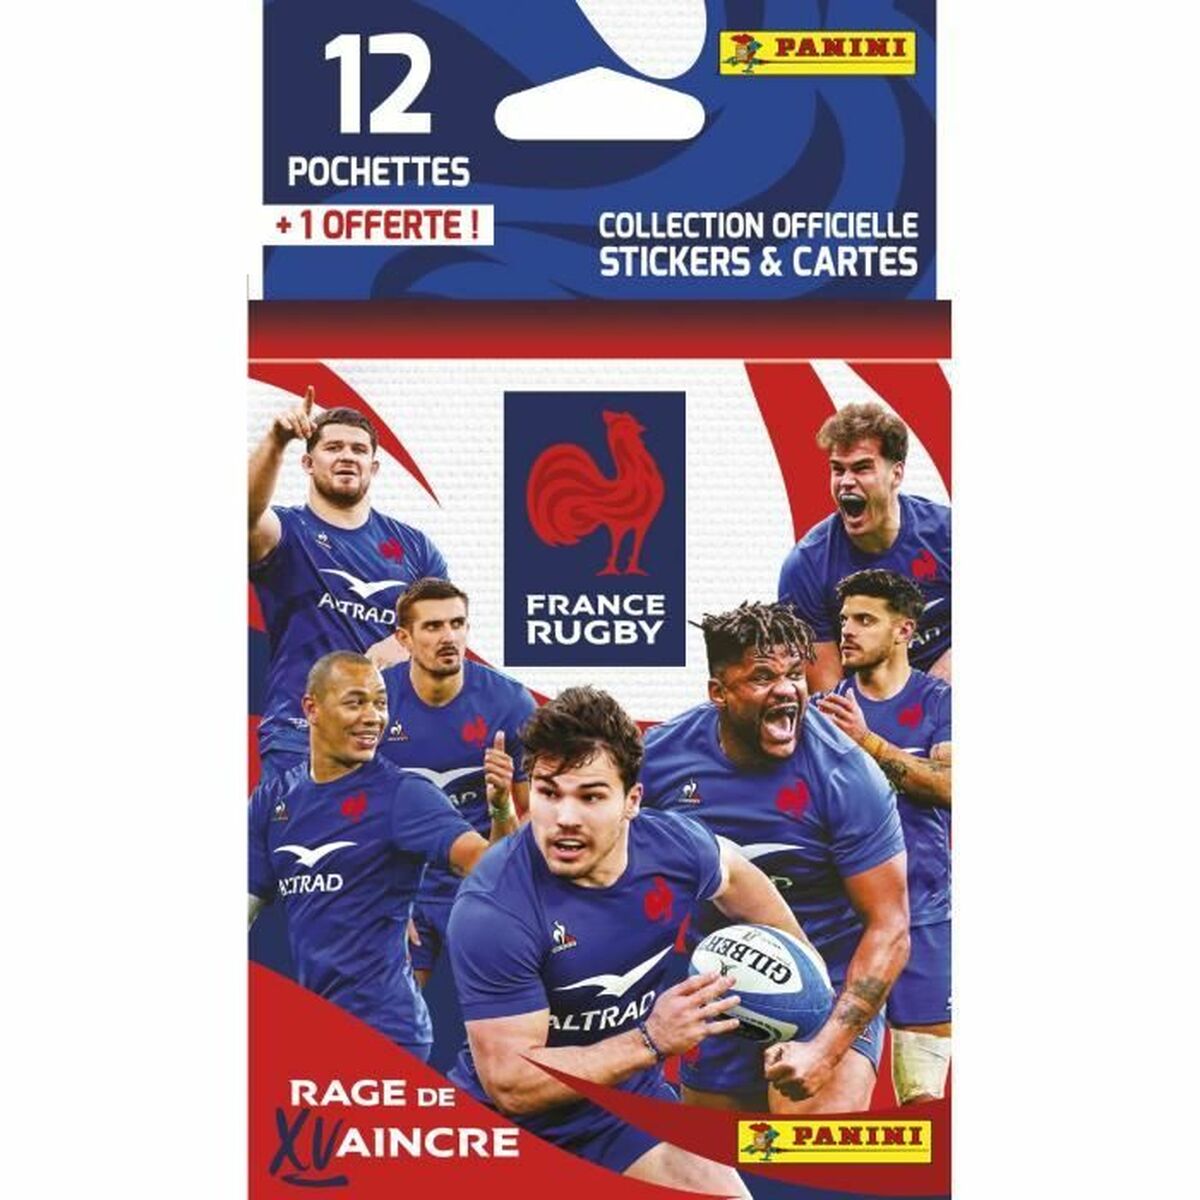 Pacchetto Chrome Panini France Rugby 12 Buste - Disponibile in 3-4 giorni lavorativi